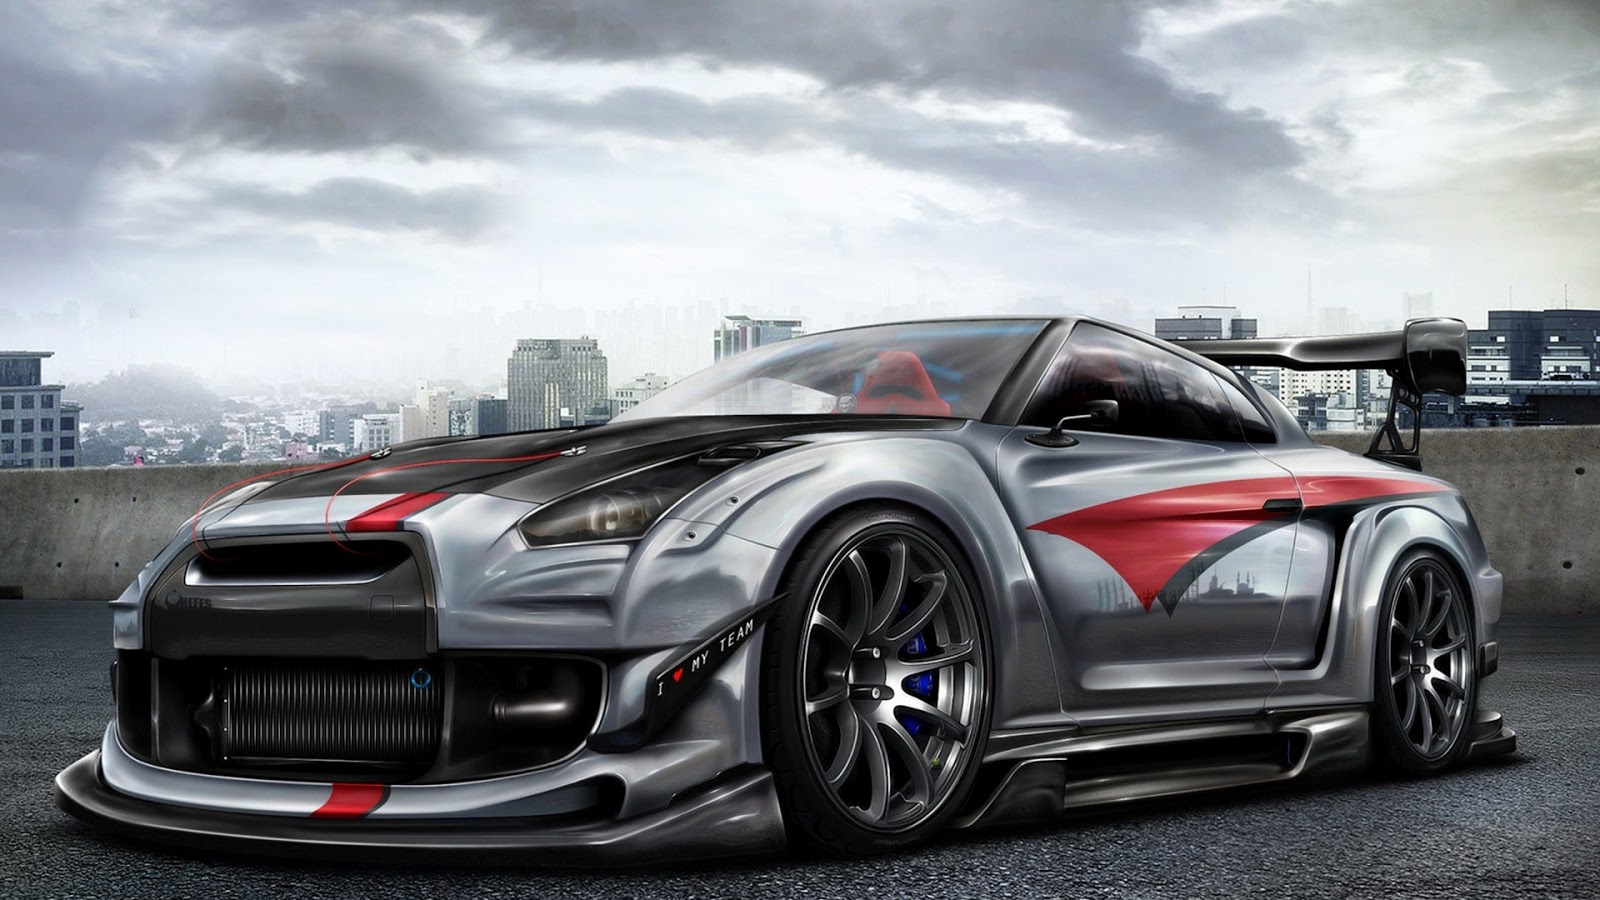 2014 Nissan skyline gtr | Welcome Cars